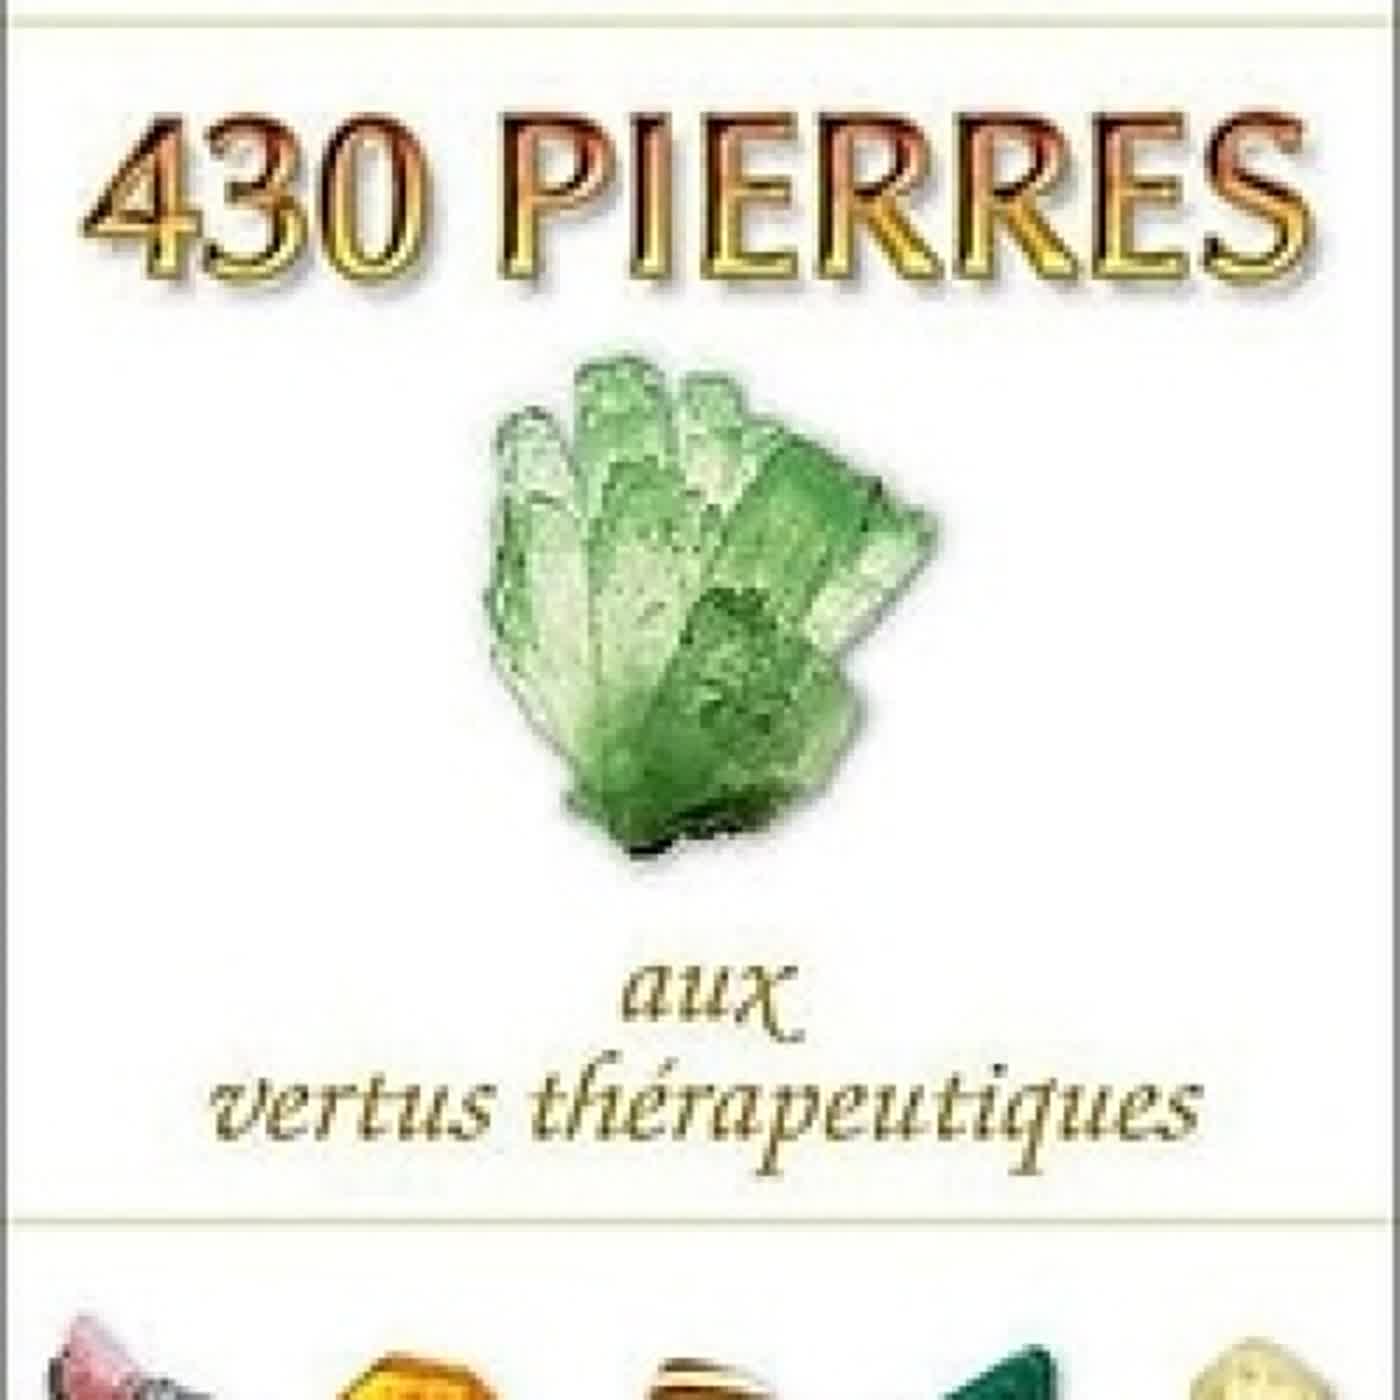 [PDF/Kindle] 430 Pierres aux vertus thérapeutiques by Michael Gienger